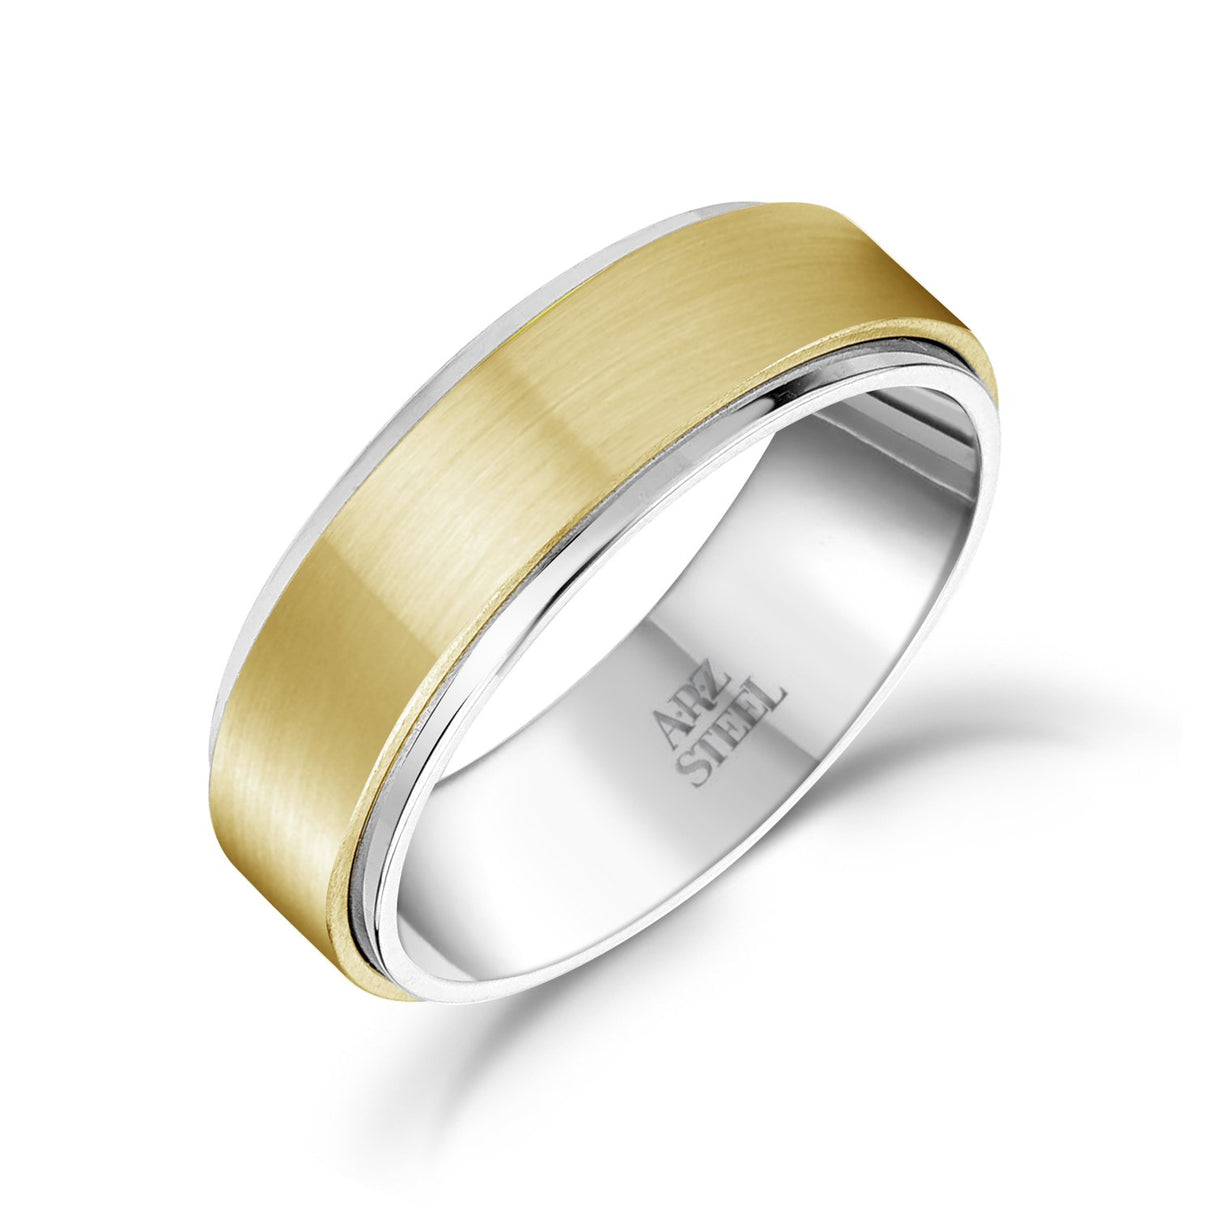 Männer Ring - 7mm Gold Stahl Ehering - Gravierbar